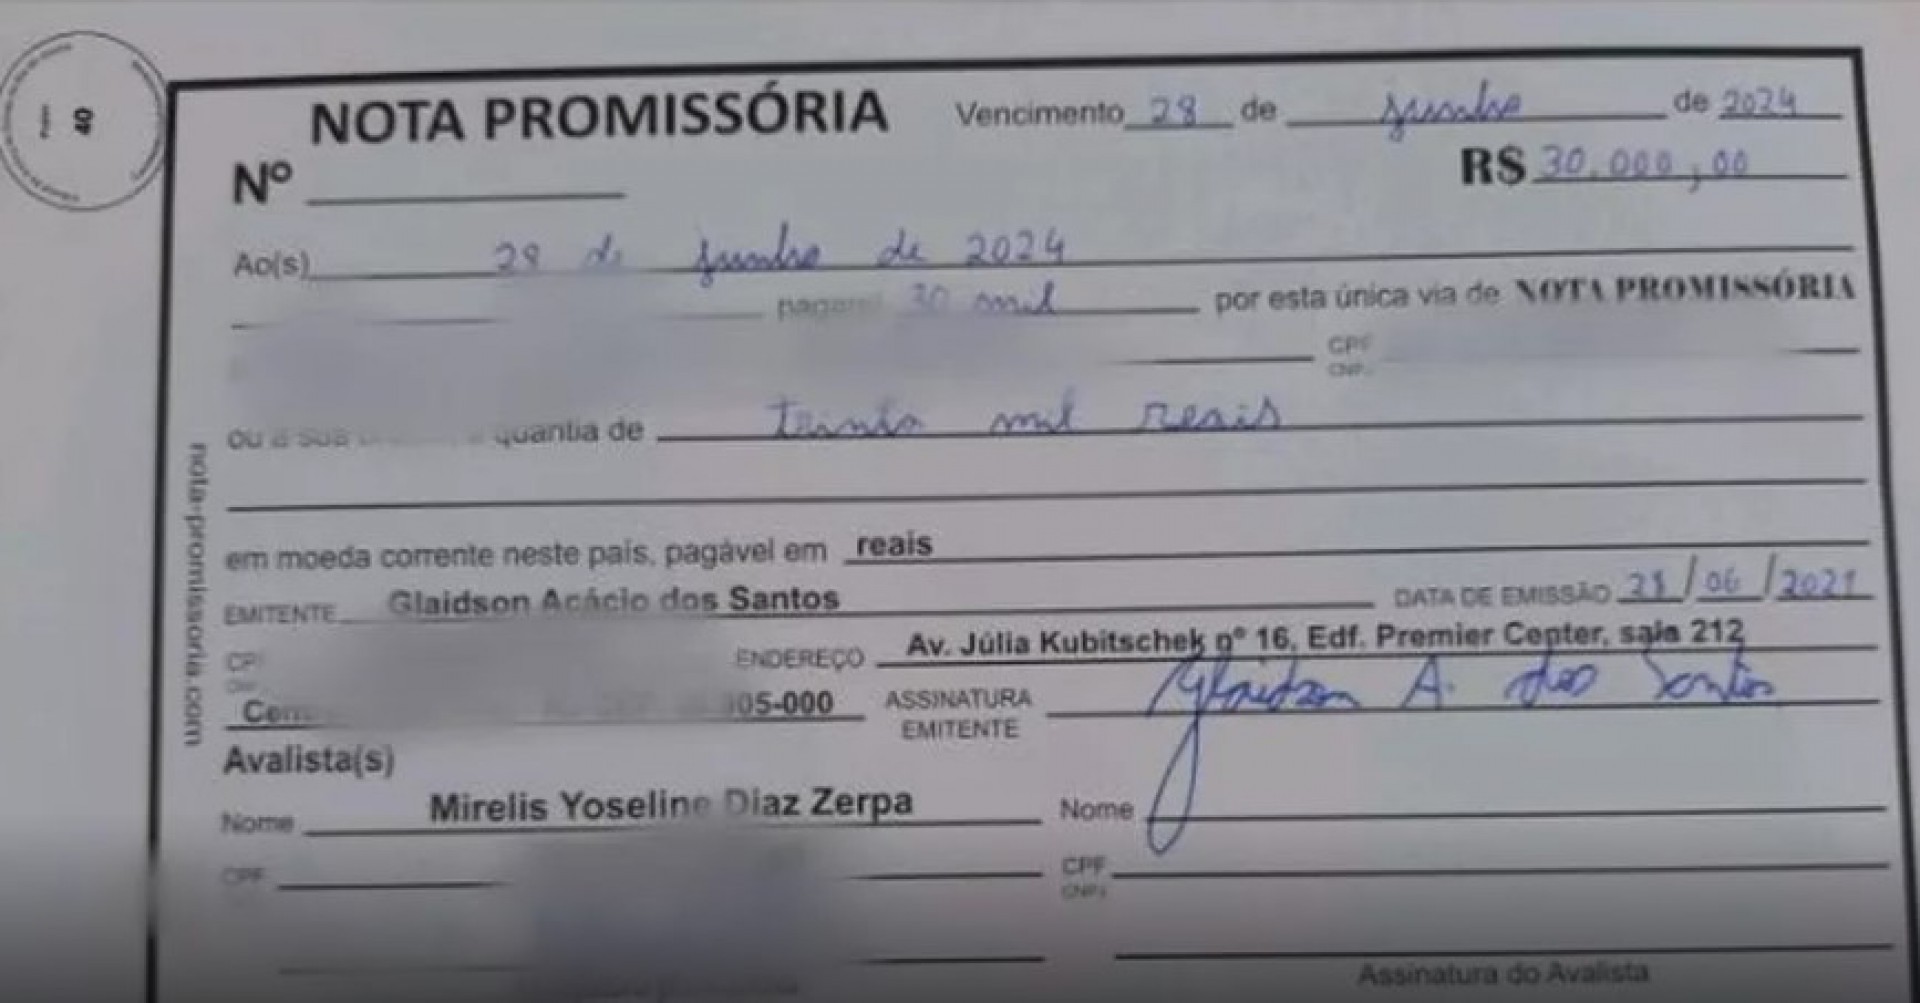 Justiça do Rio decreta mandado de prisão por estelionato ao ‘Faraó dos Bitcoins’  - Letycia Rocha (RC24h)